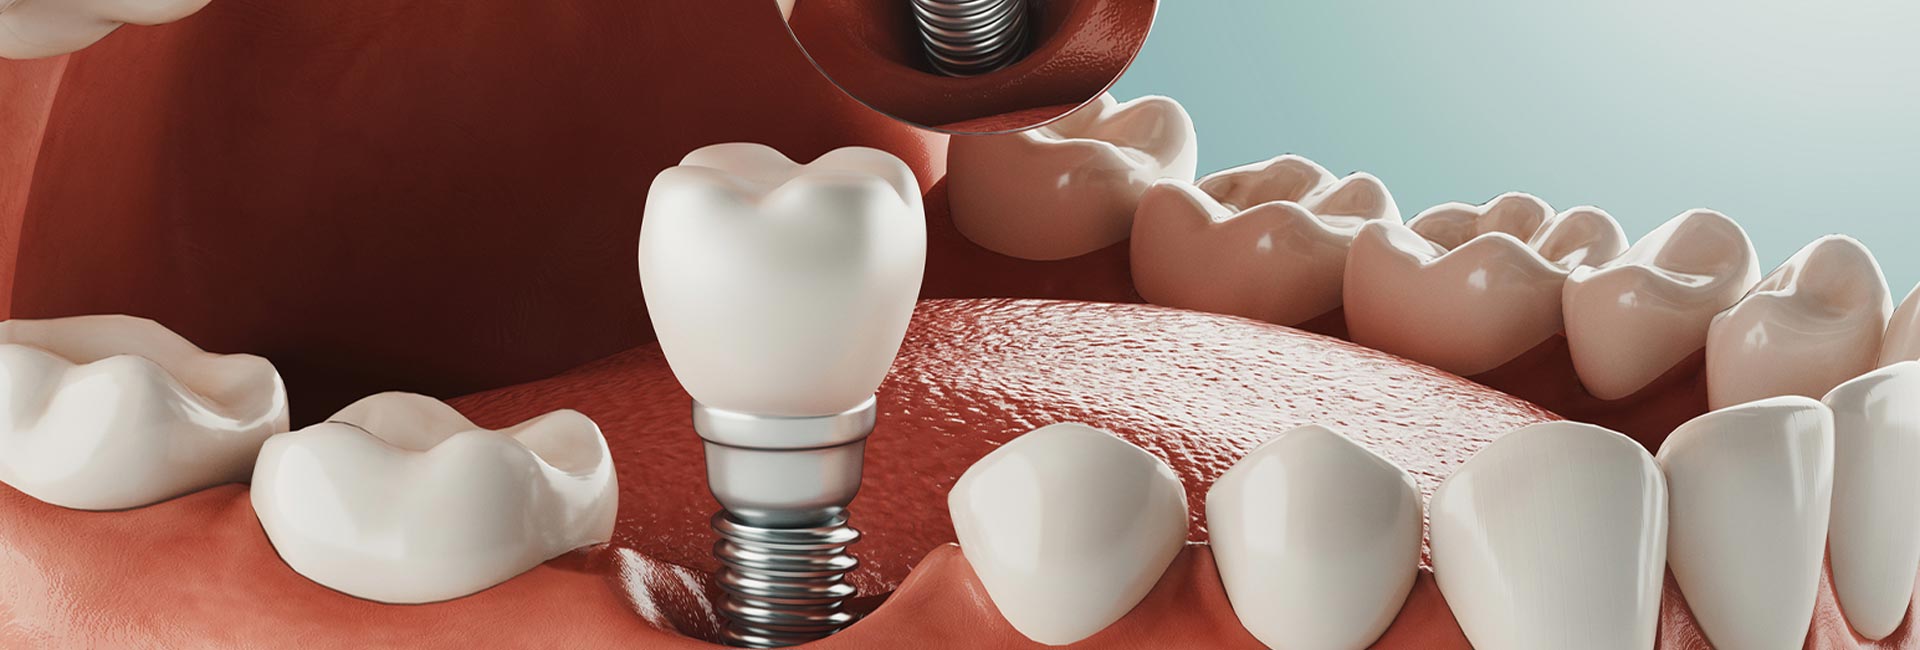 3D Illustration of dental implant